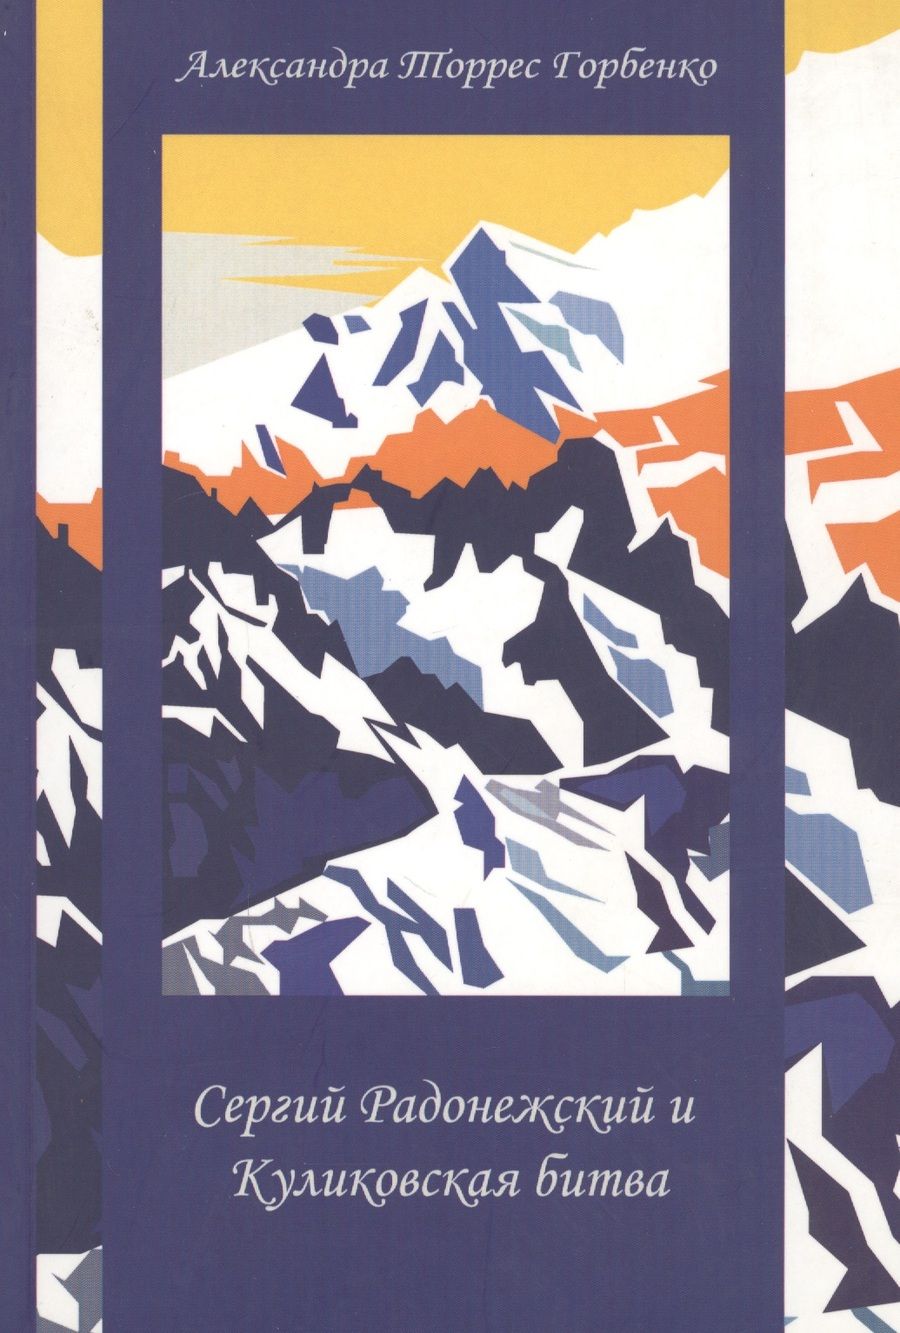 Обложка книги "Александра Горбенко: Сергий Радонежский и Куликовская битва"